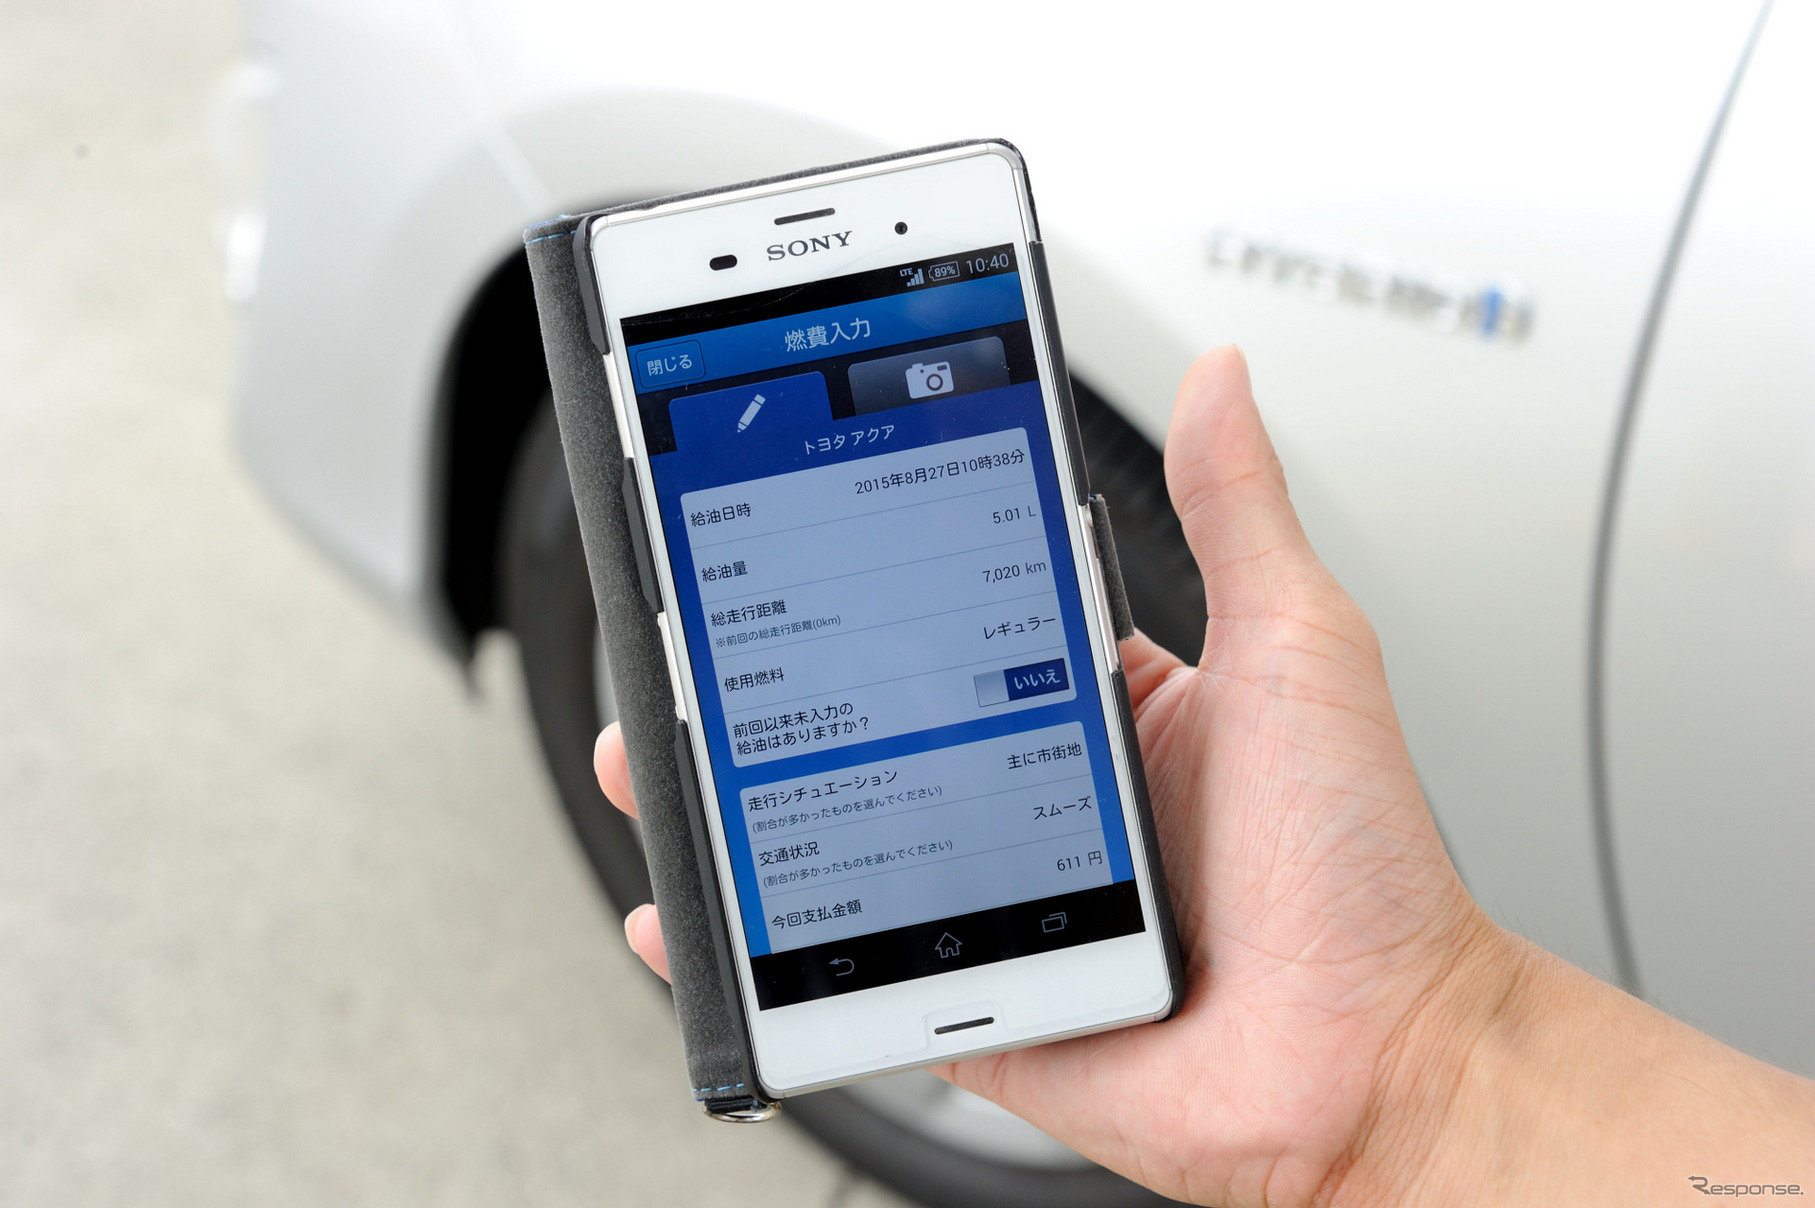 燃費計測にはマイカー燃費計測アプリ「e燃費」を使用した。